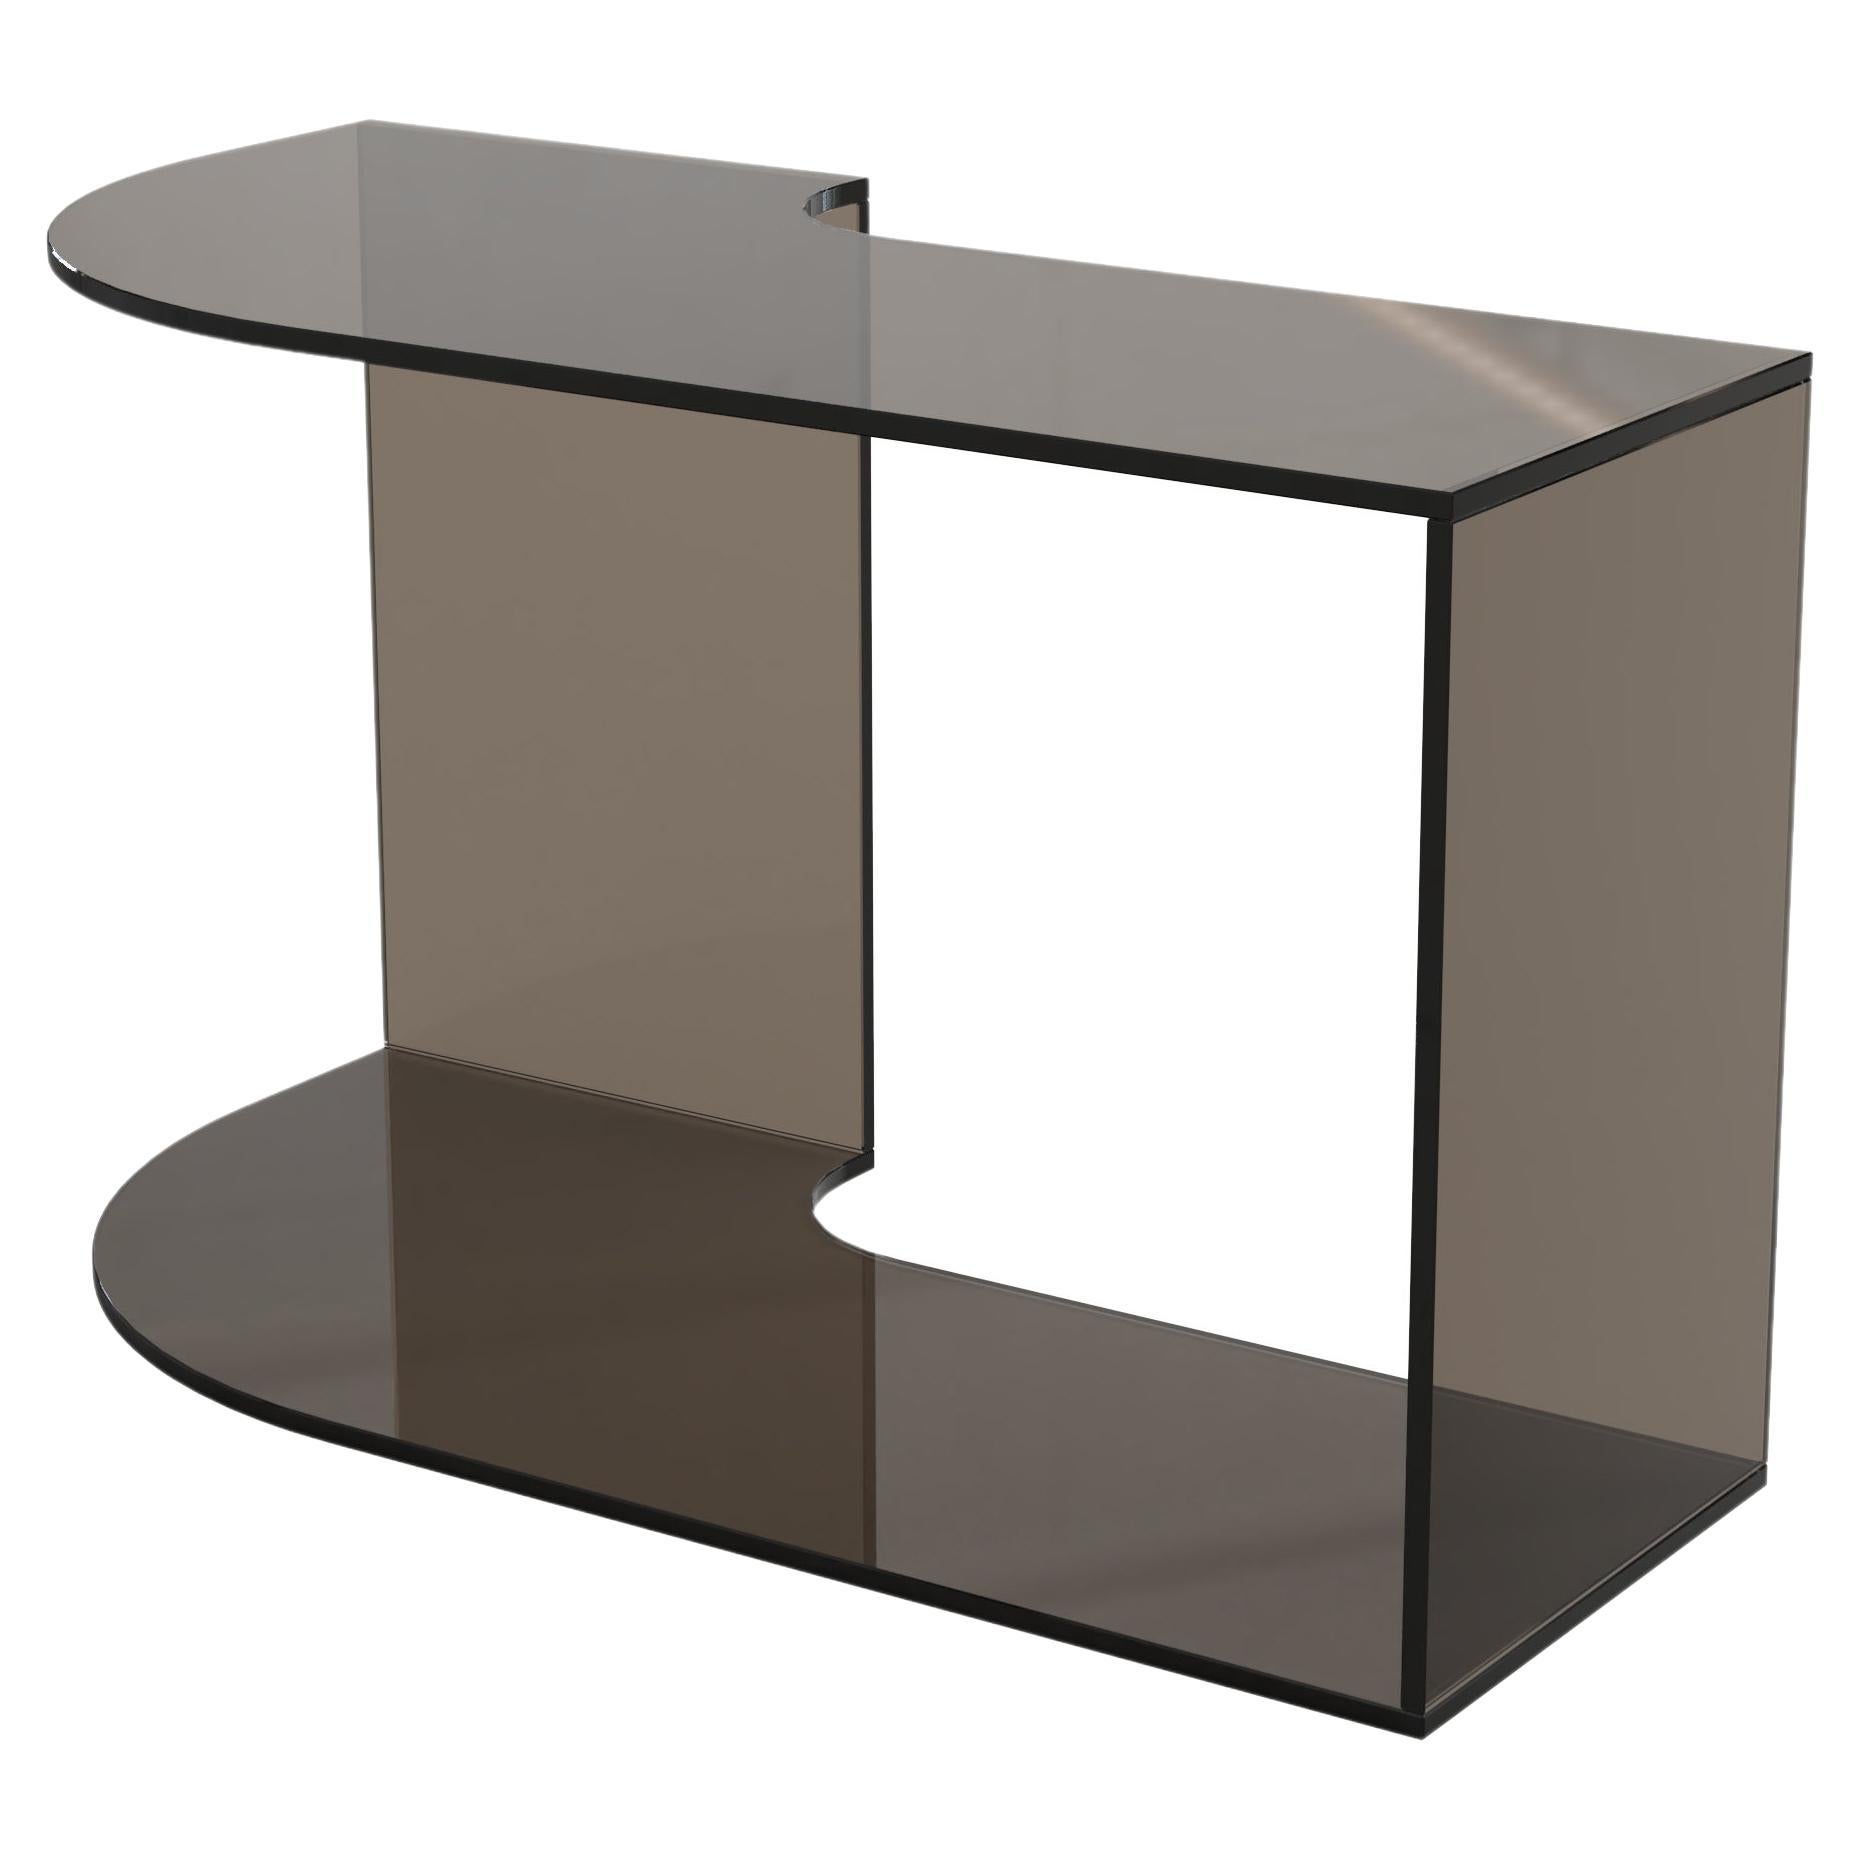 Contemporary Limited Edition Bronze Glass Table, Quarter V2 by Edizione Limitata For Sale